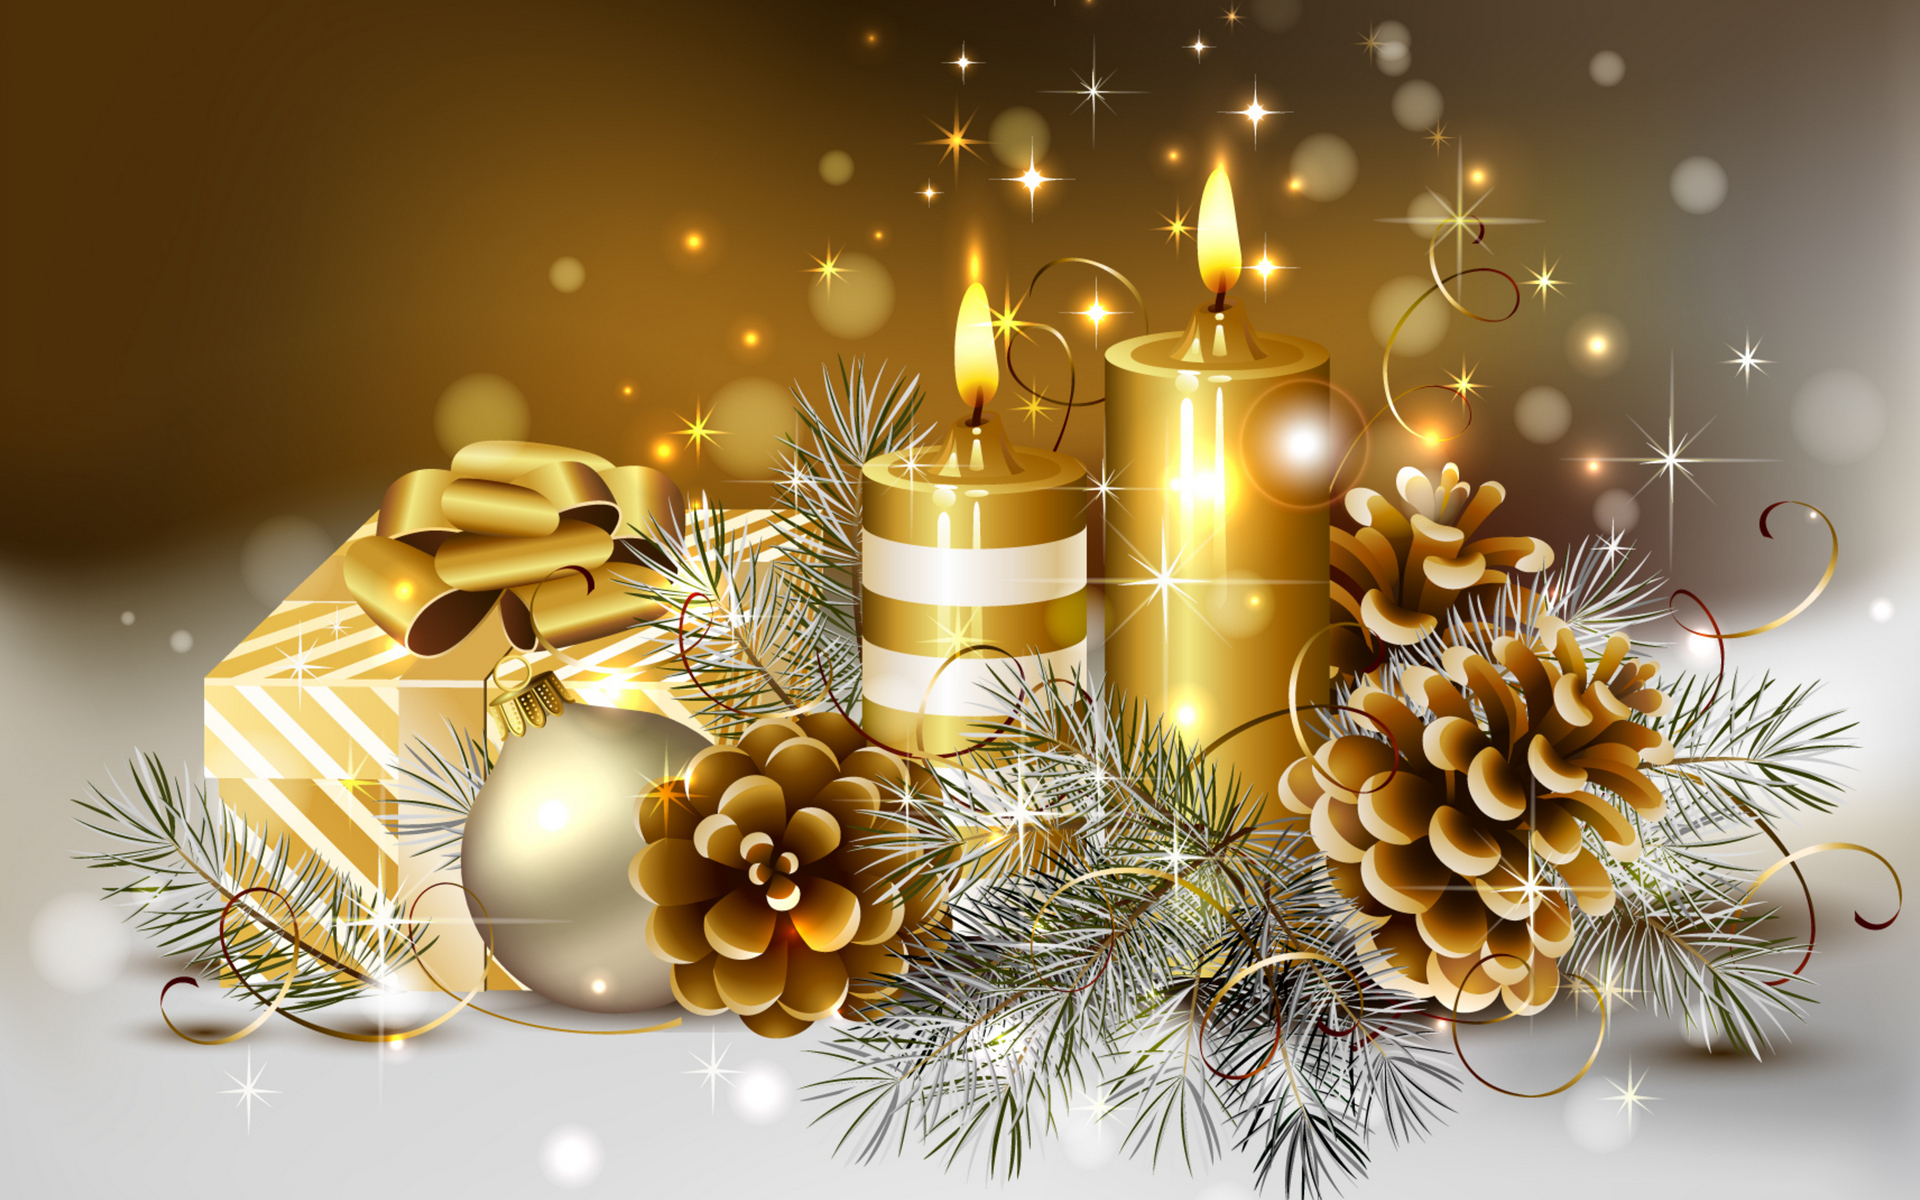 fondo de pantalla de navidad hd,nochebuena,decoración navideña,vela,árbol,encendiendo